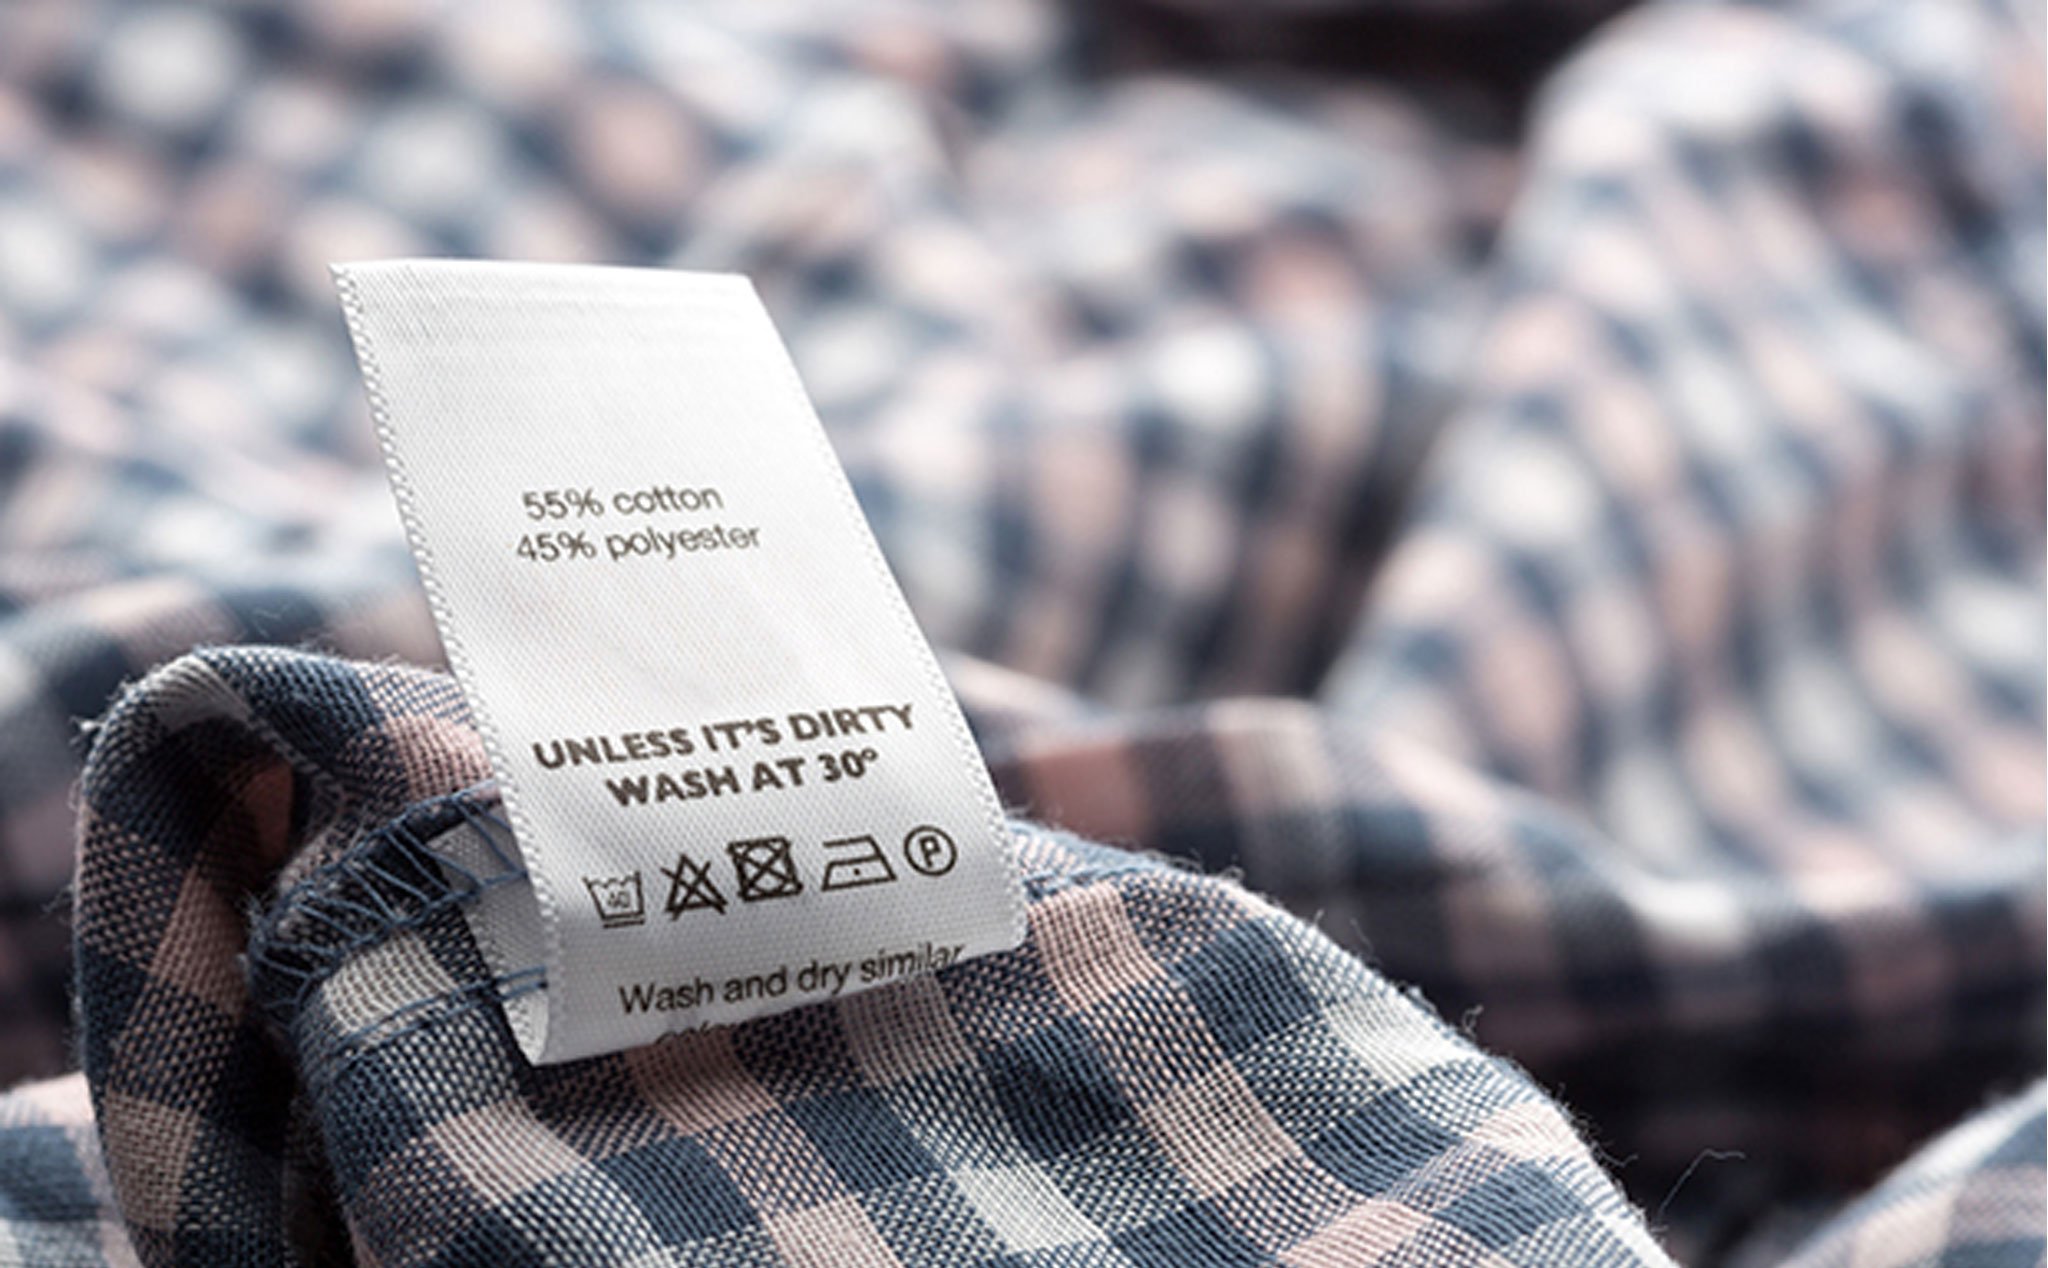 Hiểu các ký hiệu trên nhãn dán quần áo để giặt và bảo quản tốt hơn